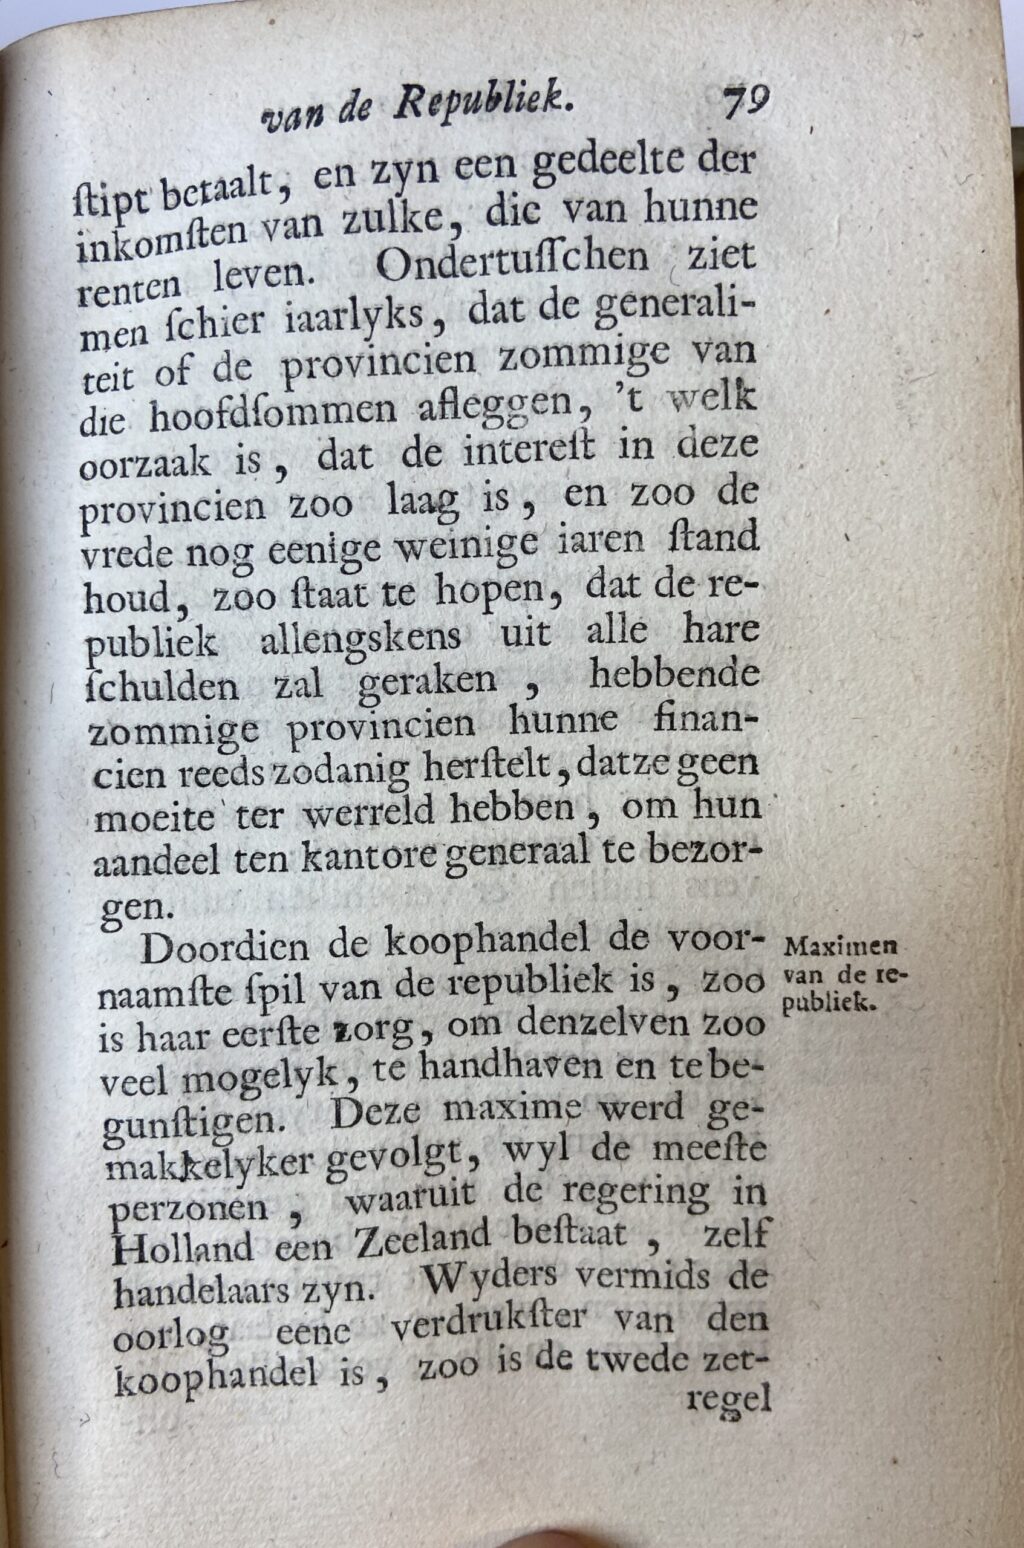 [History The Netherlands 1736] De Republiek der Vereenigde Nederlanden, tweede druk, 4 volumes. ‘s Gravenhage: F. Moselagen en D. Langeweg, 1736, 32+392+16+376+24+443+52+347 pp.